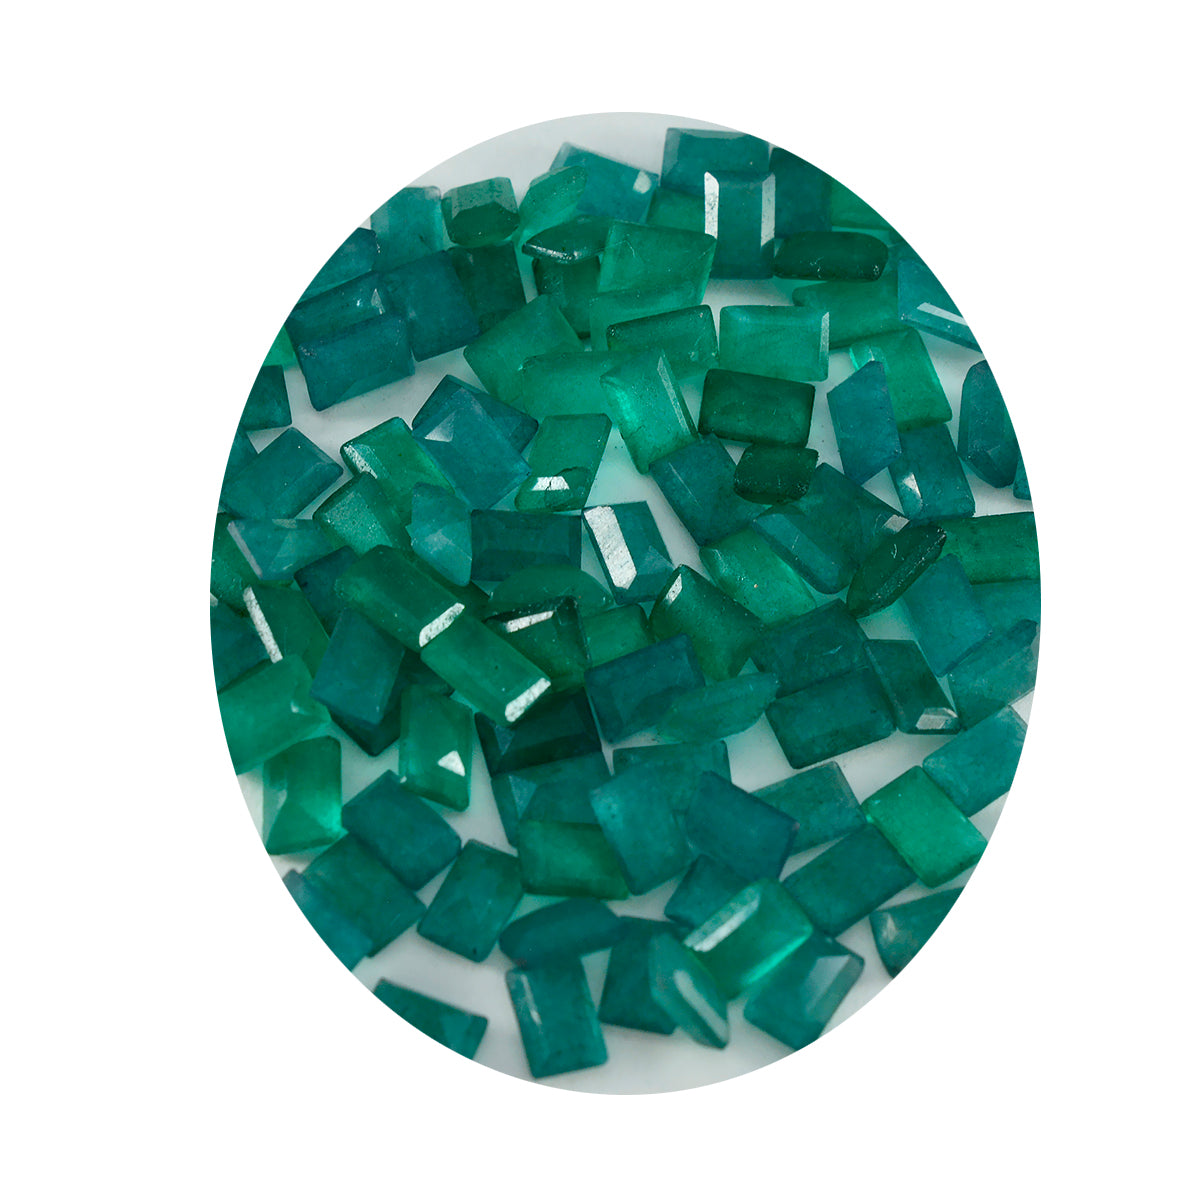 riyogems 1шт настоящая зеленая яшма граненая 4х6 мм восьмиугольная форма драгоценный камень удивительного качества